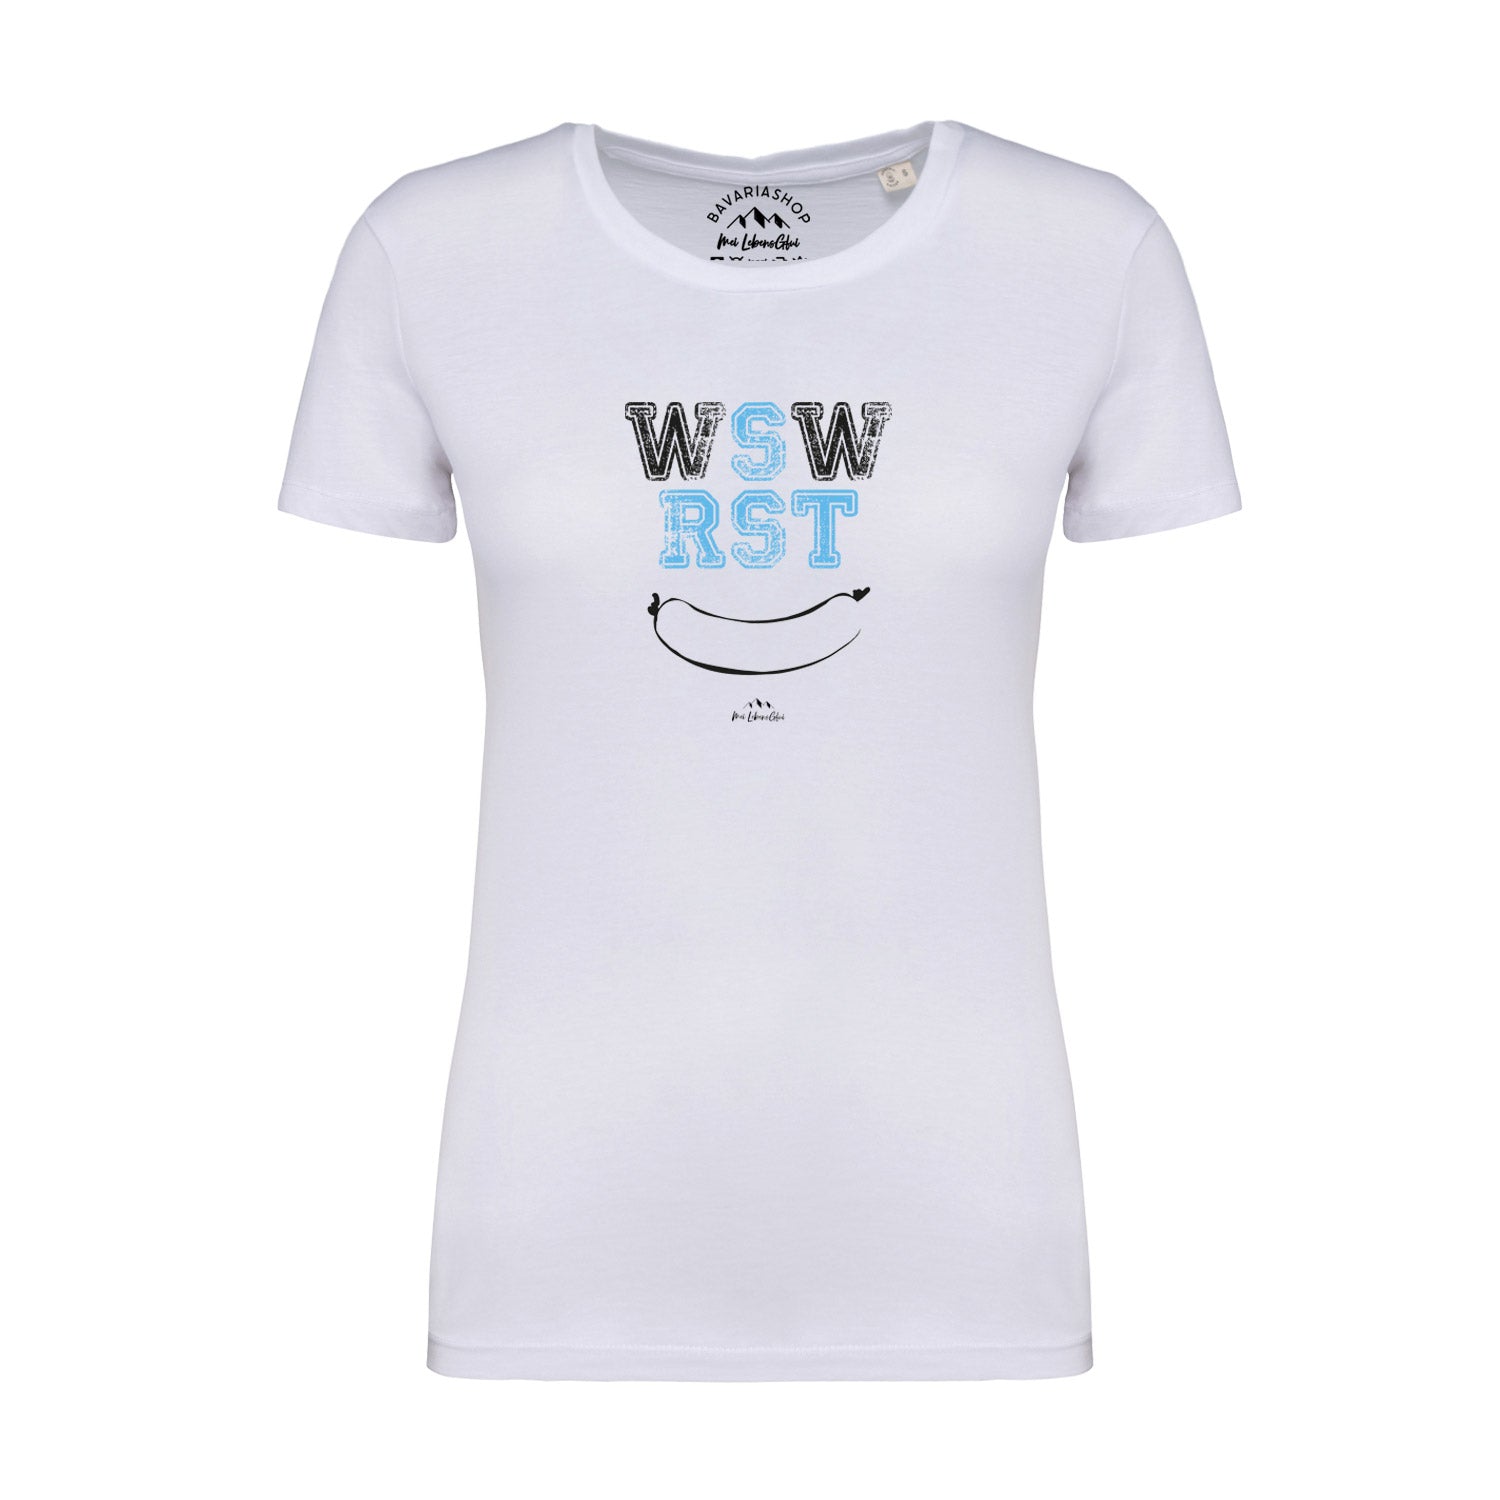 Damen T-Shirt "WSWRST"